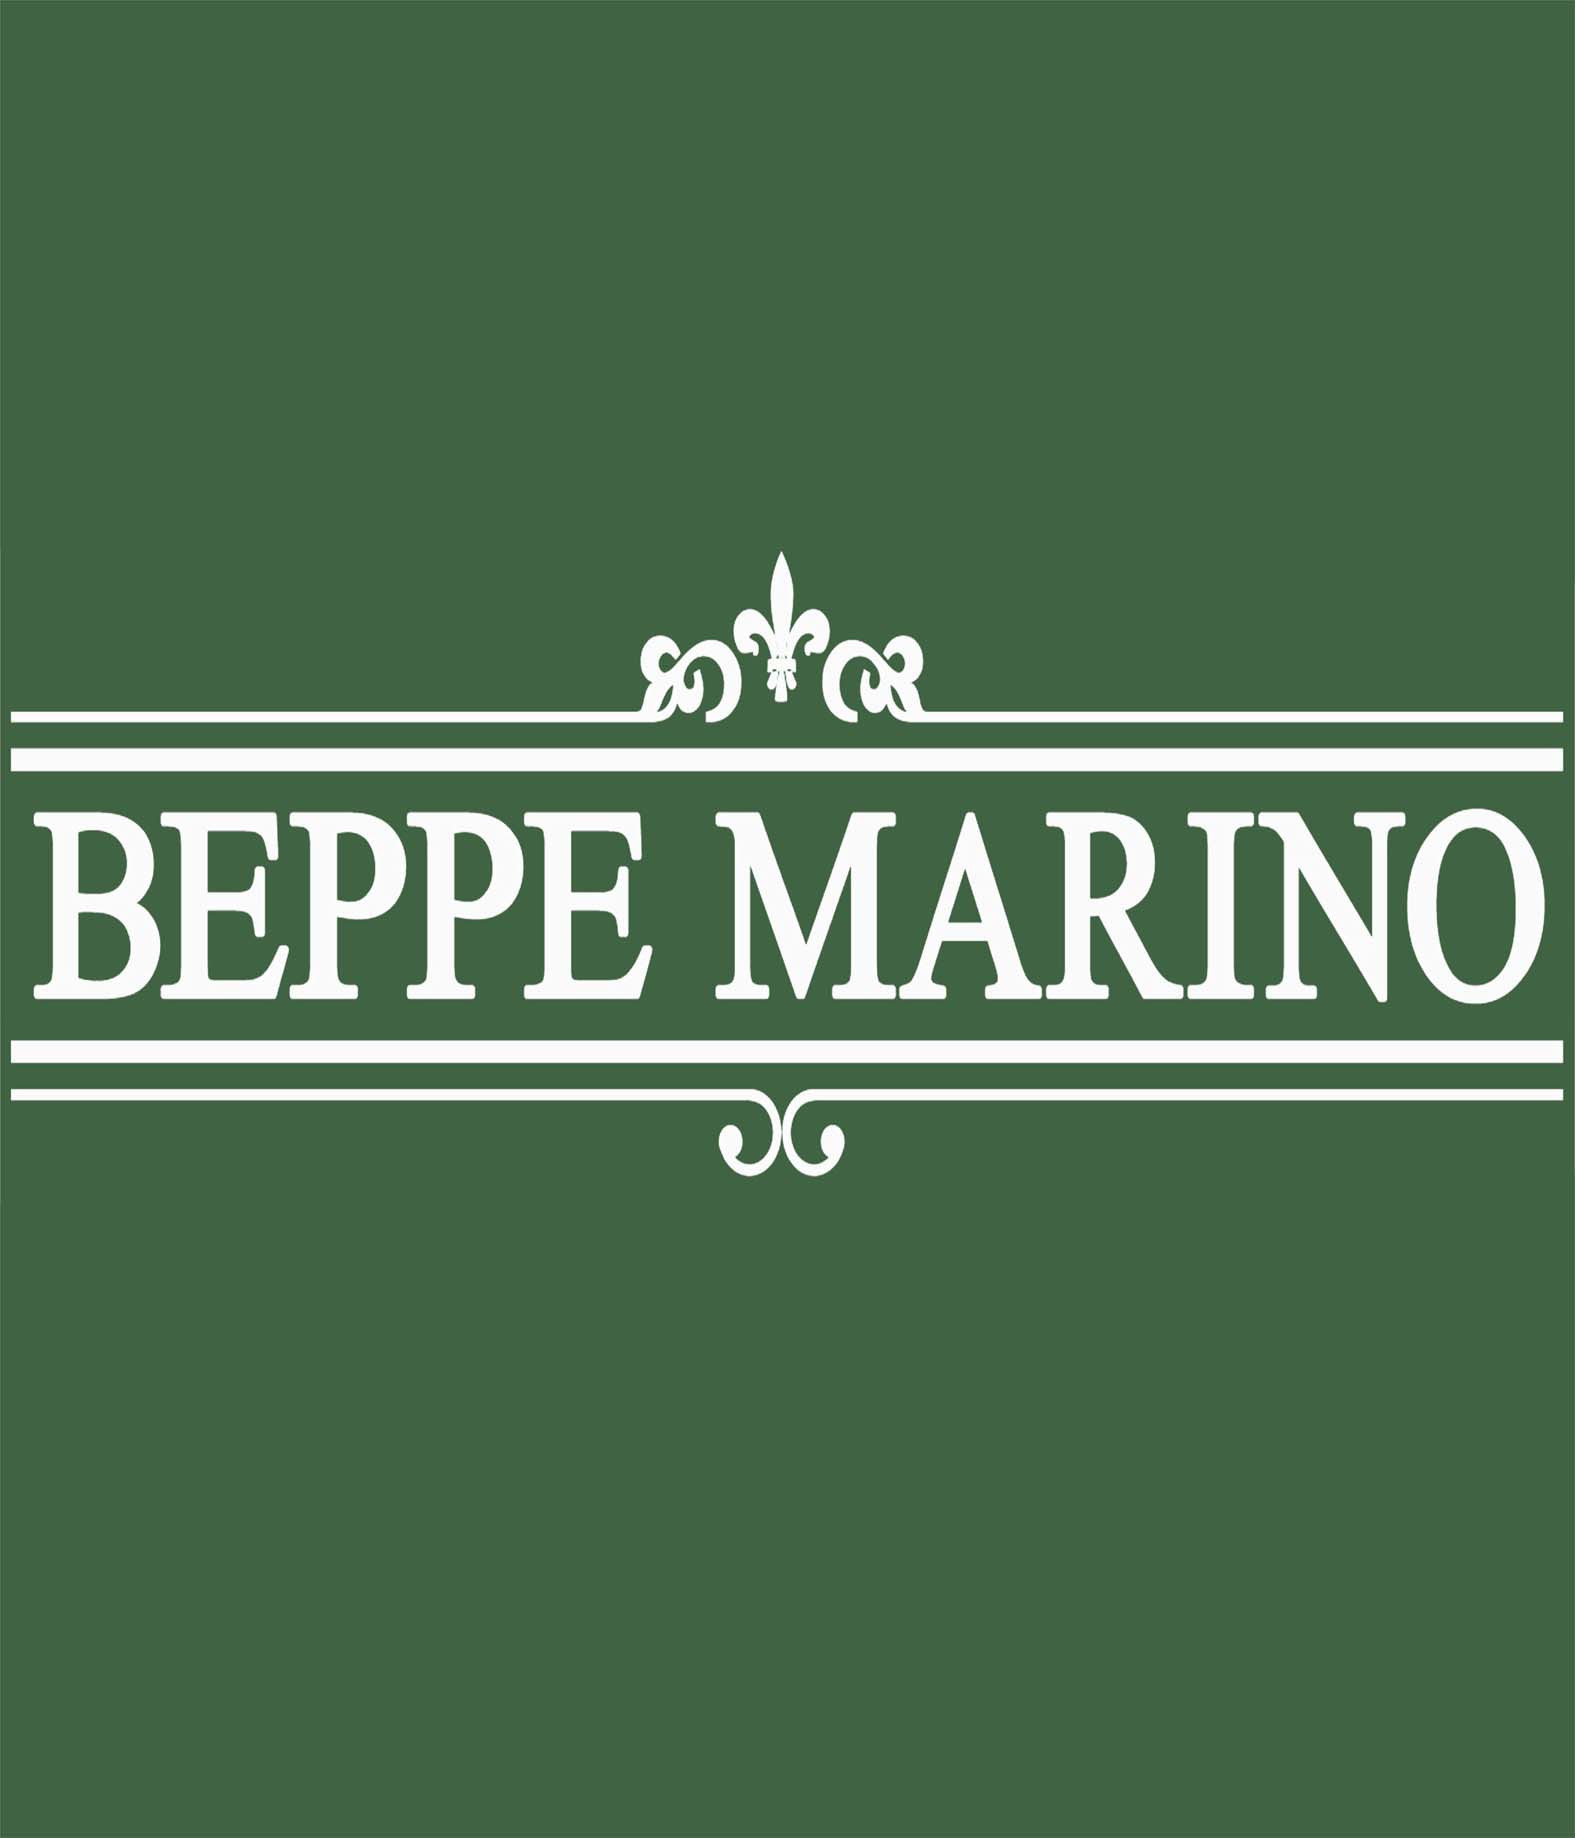 Beppe Marino